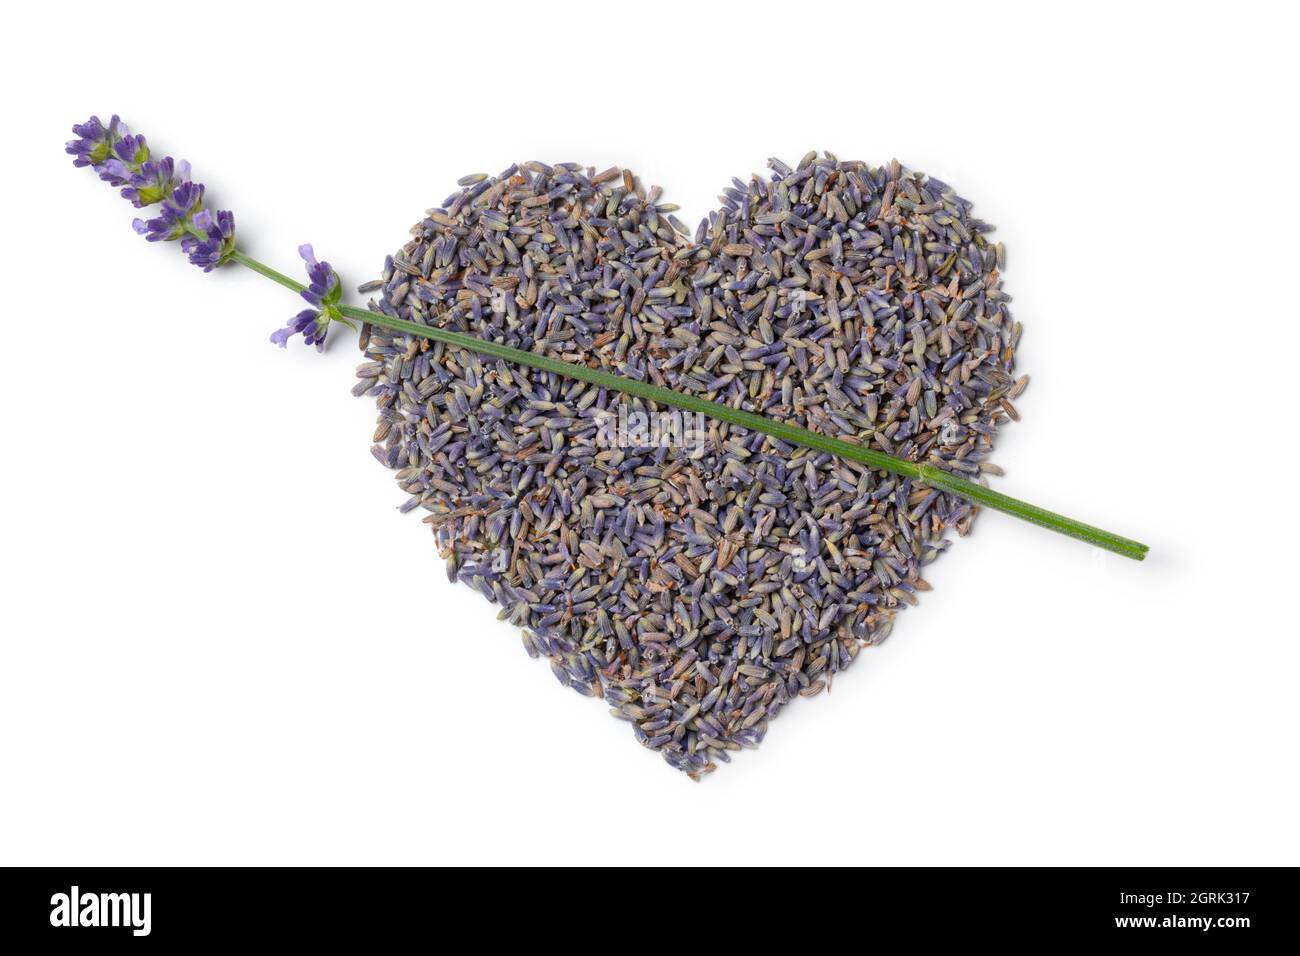 Les fleurs de lavande violettes séchées se rapprochent en forme de cœur et  une lavande fraîche, isolée sur fond blanc Photo Stock - Alamy